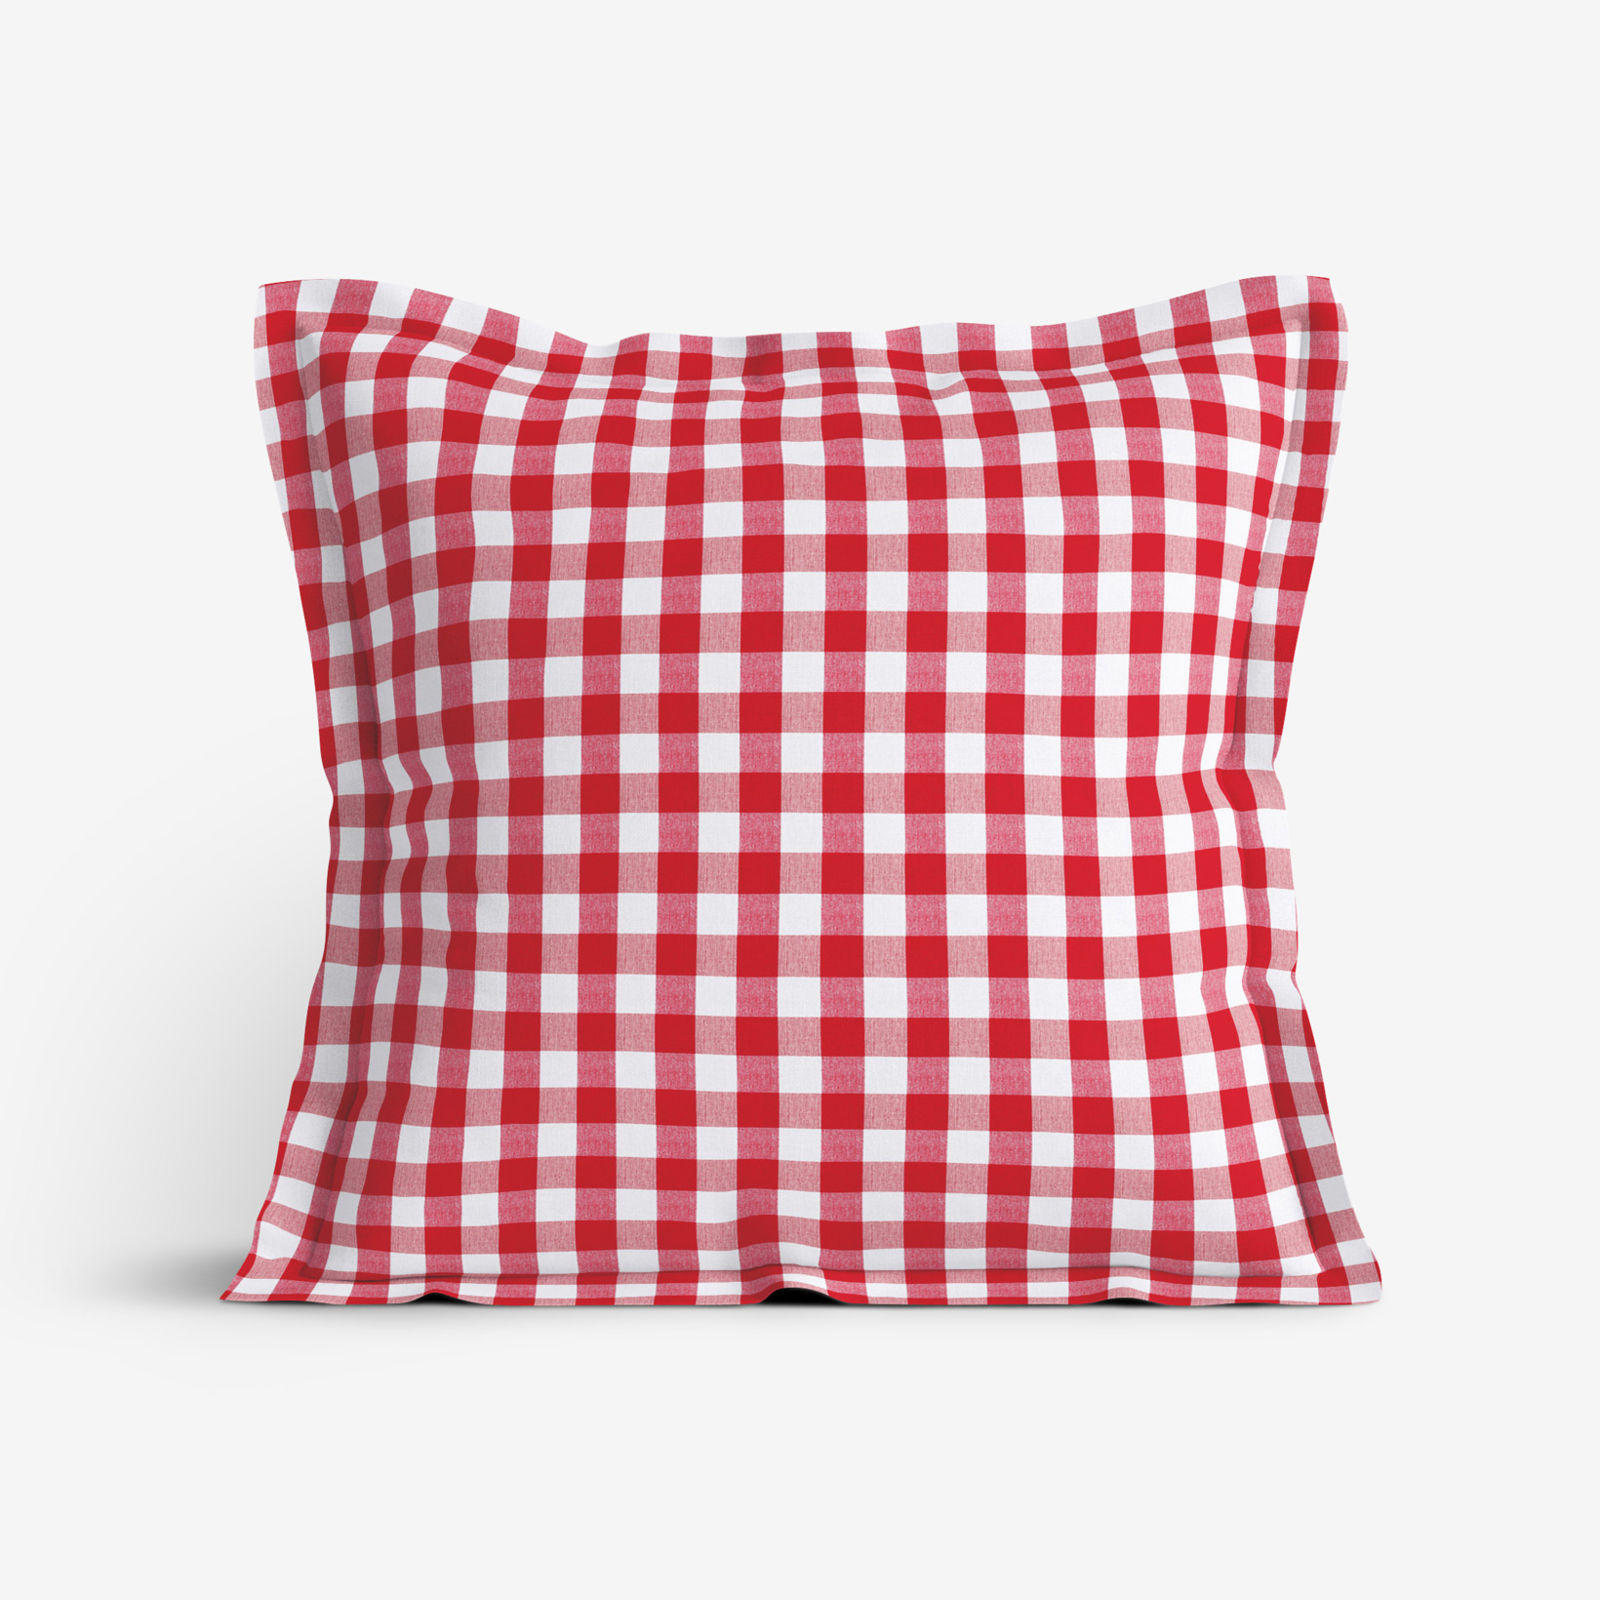 Poszewka na poduszkę z ozdobną kantą dekoracyjna Menorca - czerwono-biała kratka